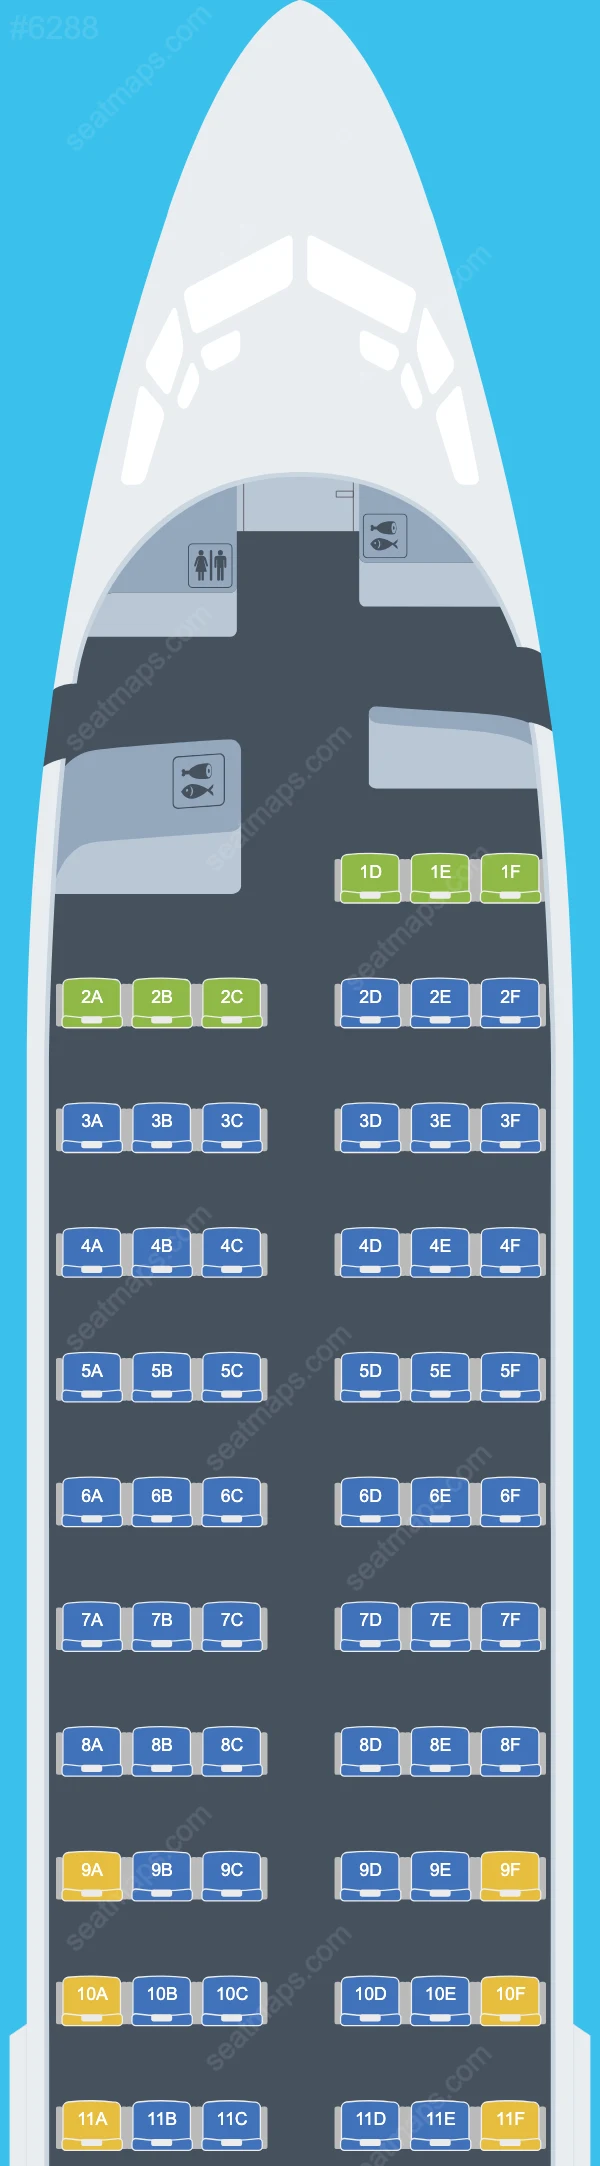 UTair Boeing 737 Seat Maps 737-400